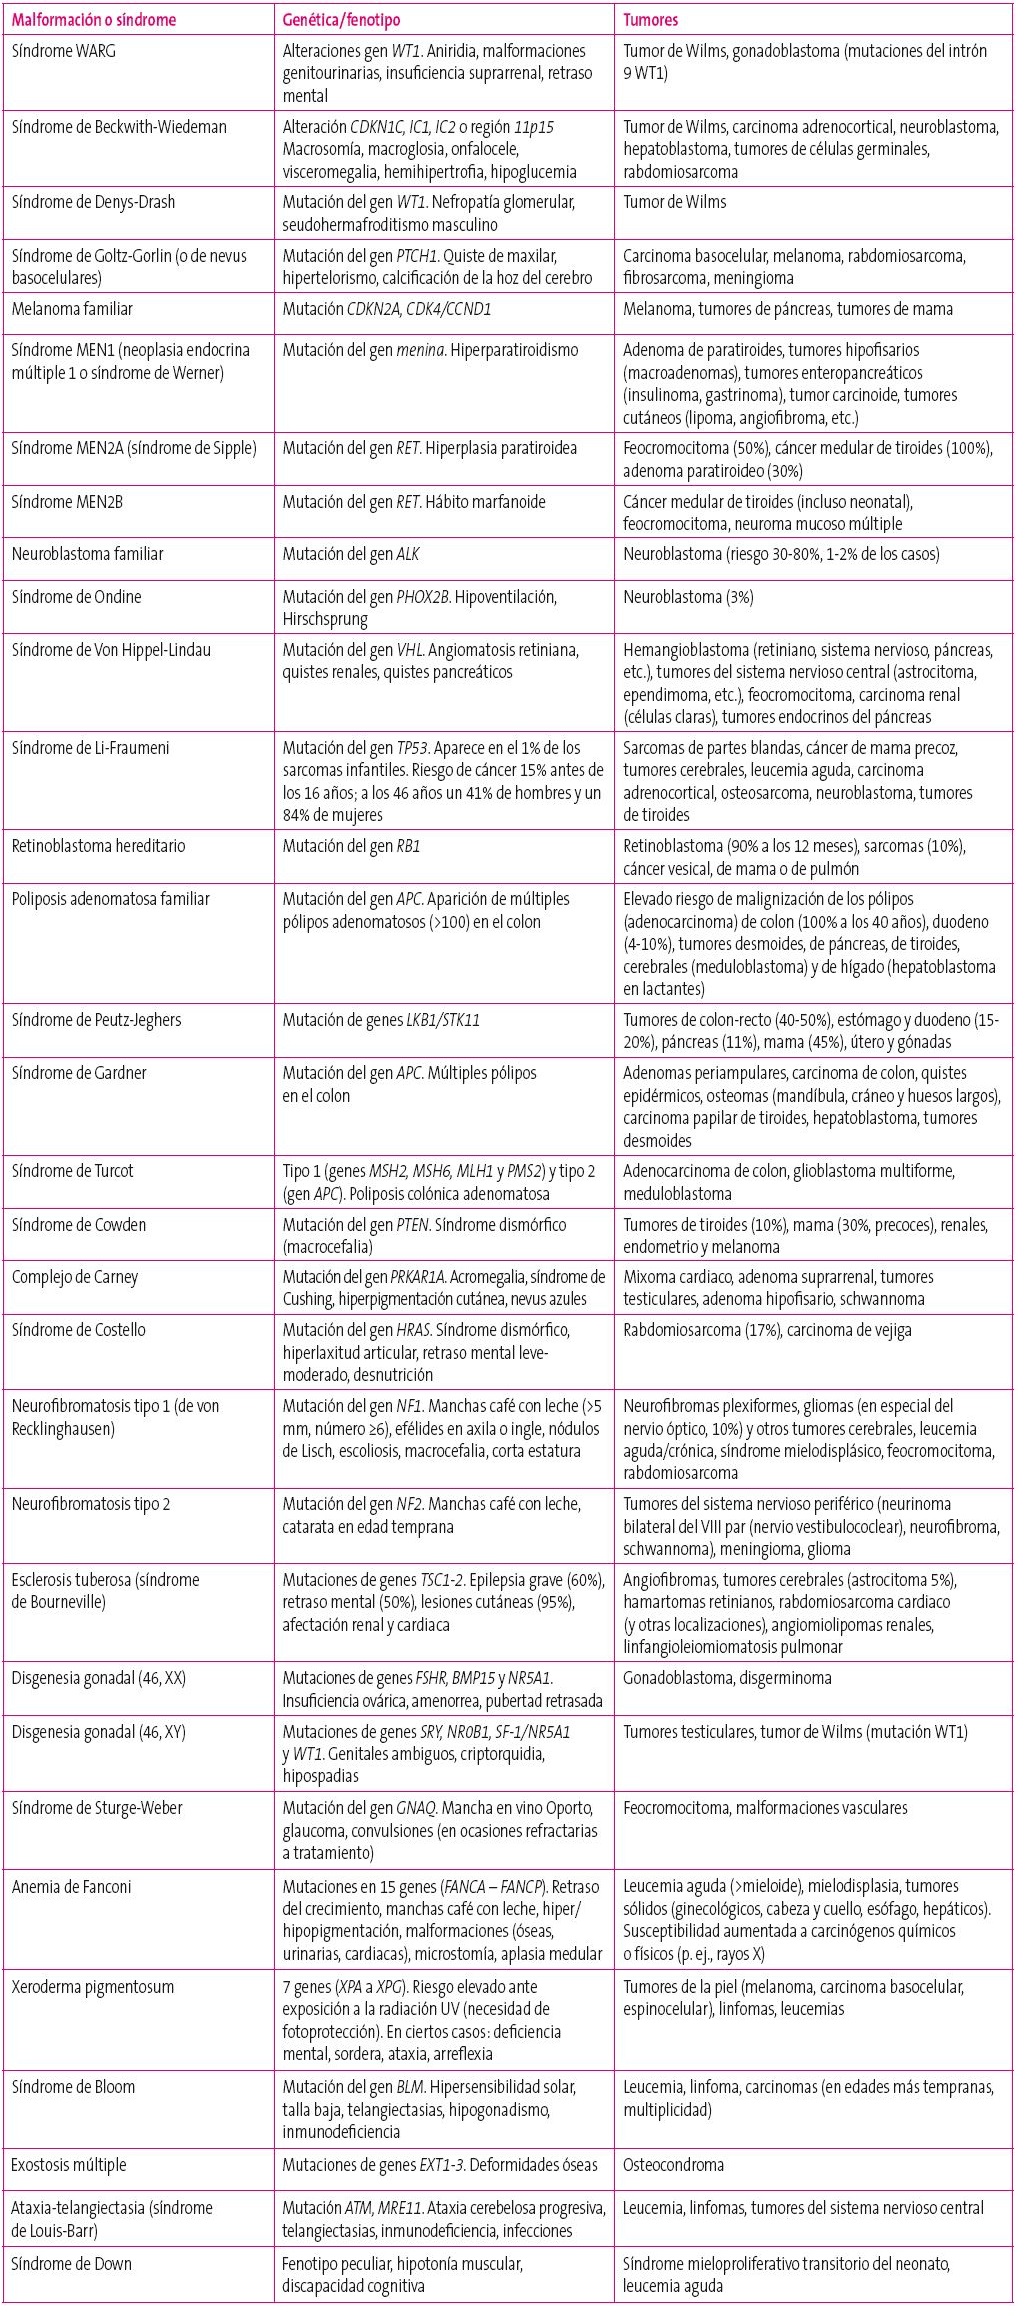 Tabla 1. Malformaciones y síndromes asociados con riesgo de desarrollo de tumores